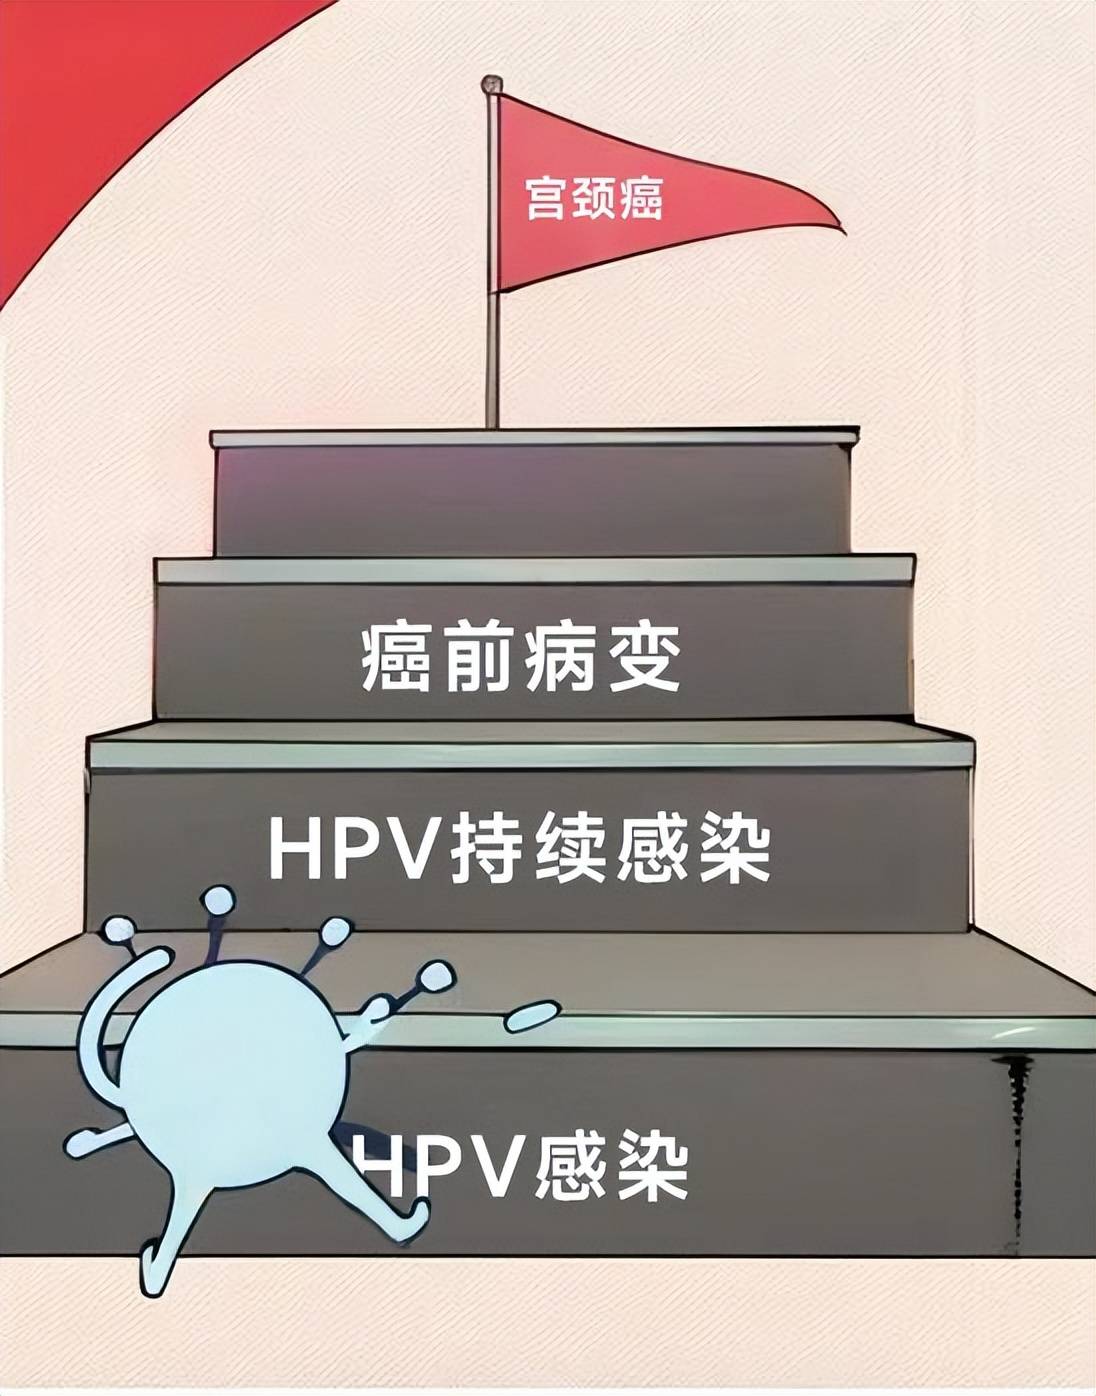 北京和平结合医院hpv科闫会宁主任专项讲解:hpv感染多久才会病变?